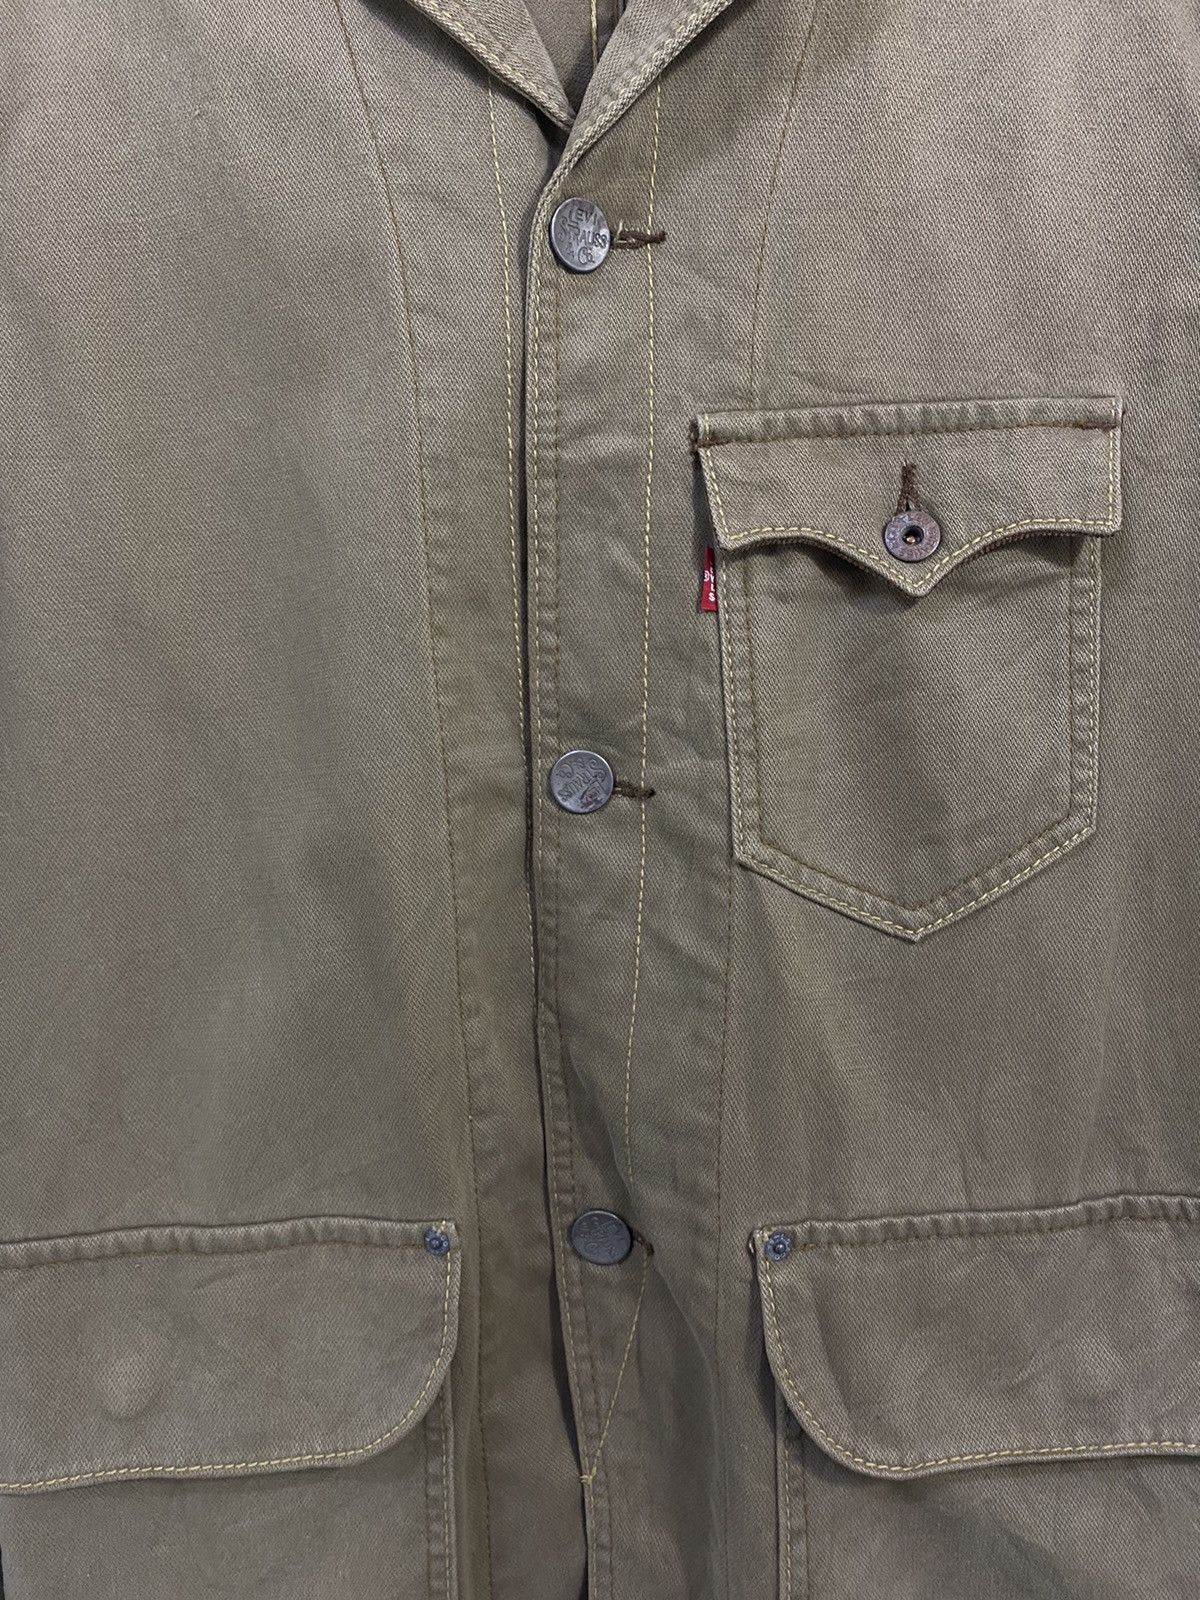 Vintage Levi’s Chore Jacket Design 3 Pocket Nice Design - 6